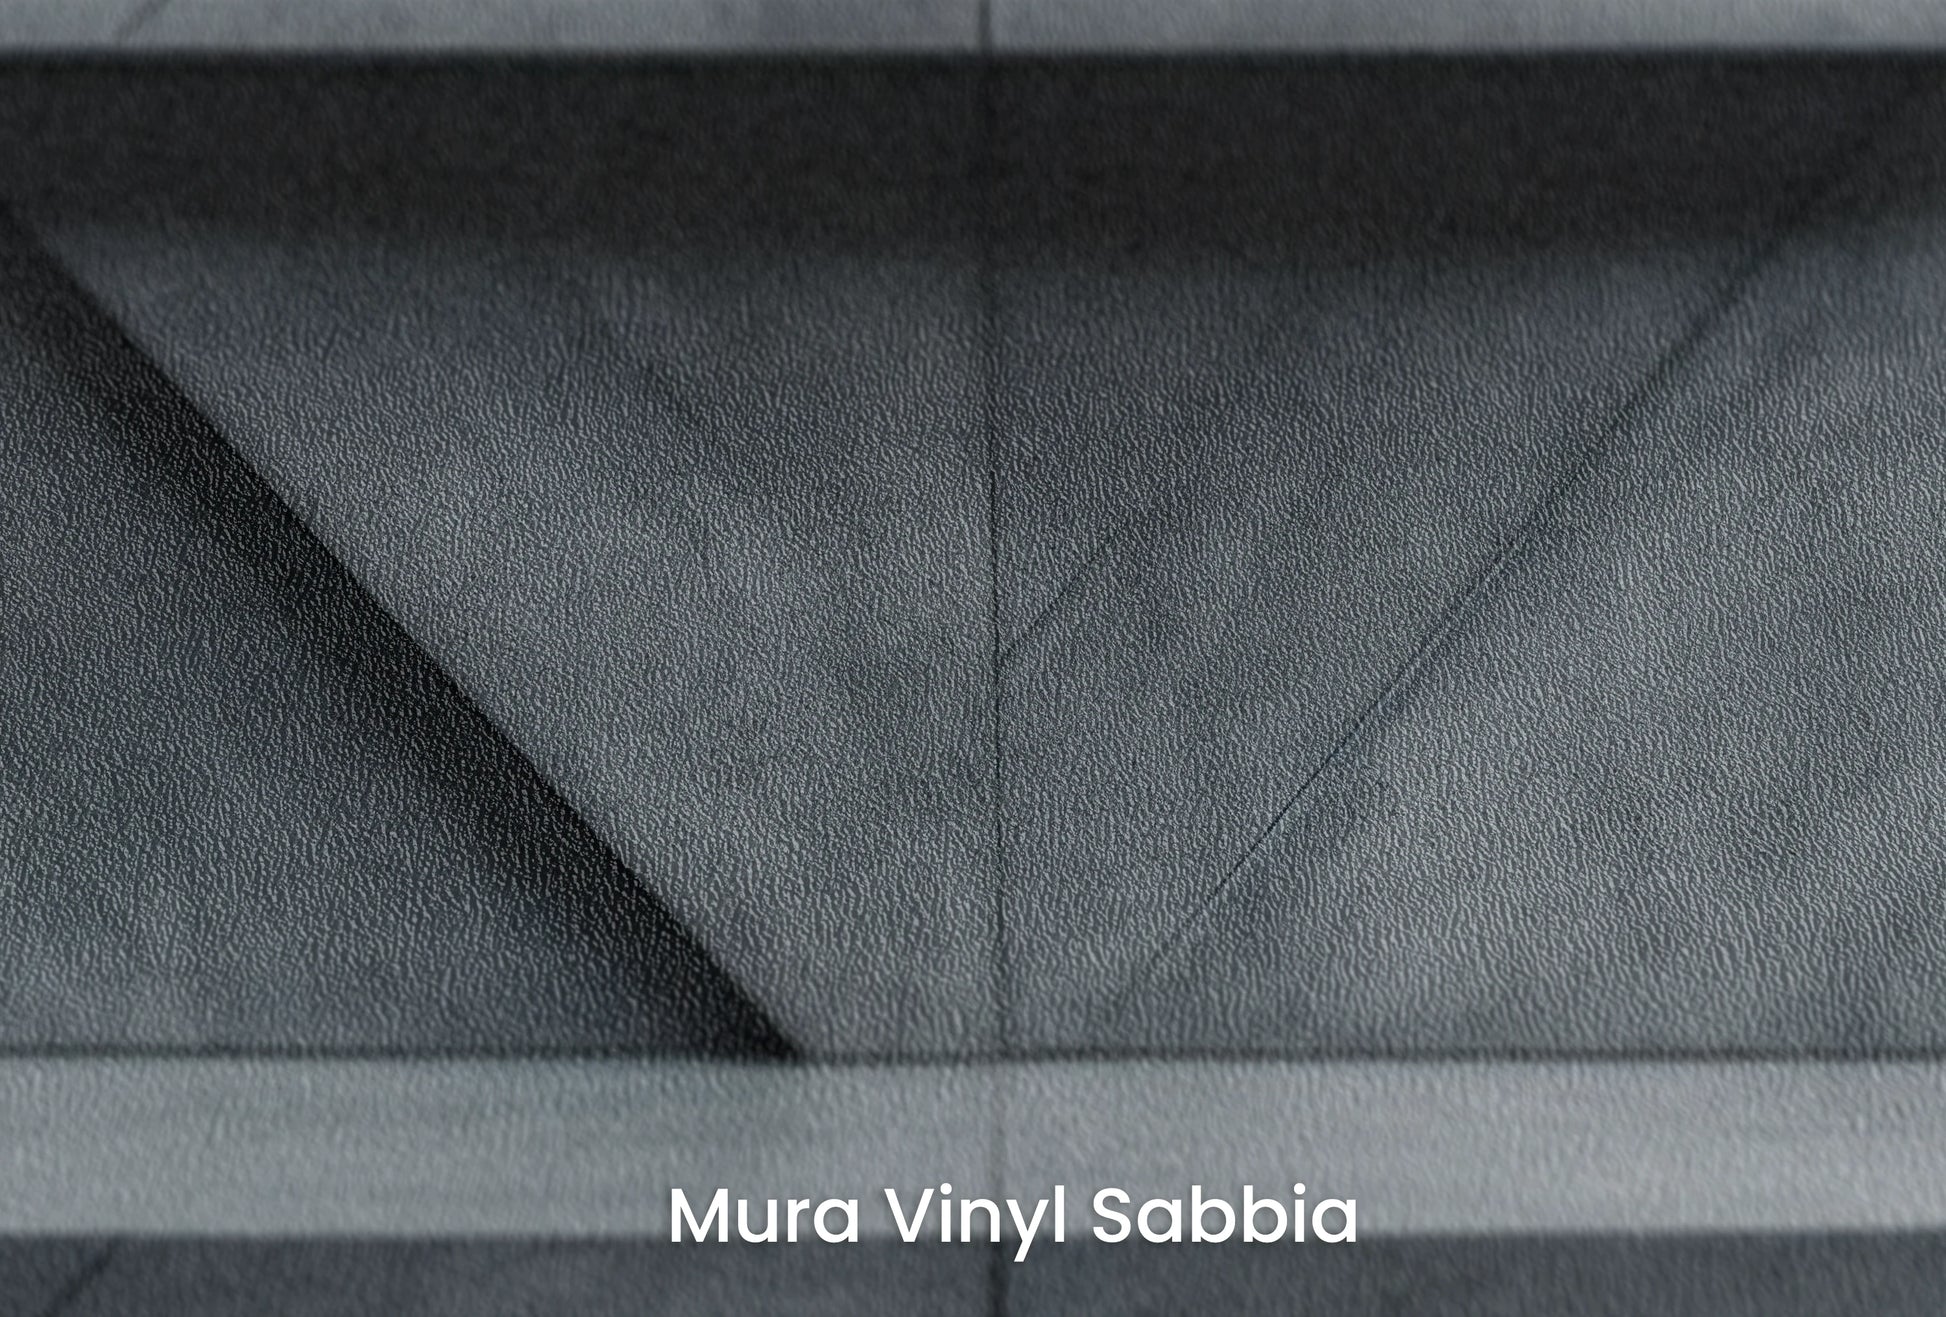 Zbliżenie na artystyczną fototapetę o nazwie Urban Angles na podłożu Mura Vinyl Sabbia struktura grubego ziarna piasku.